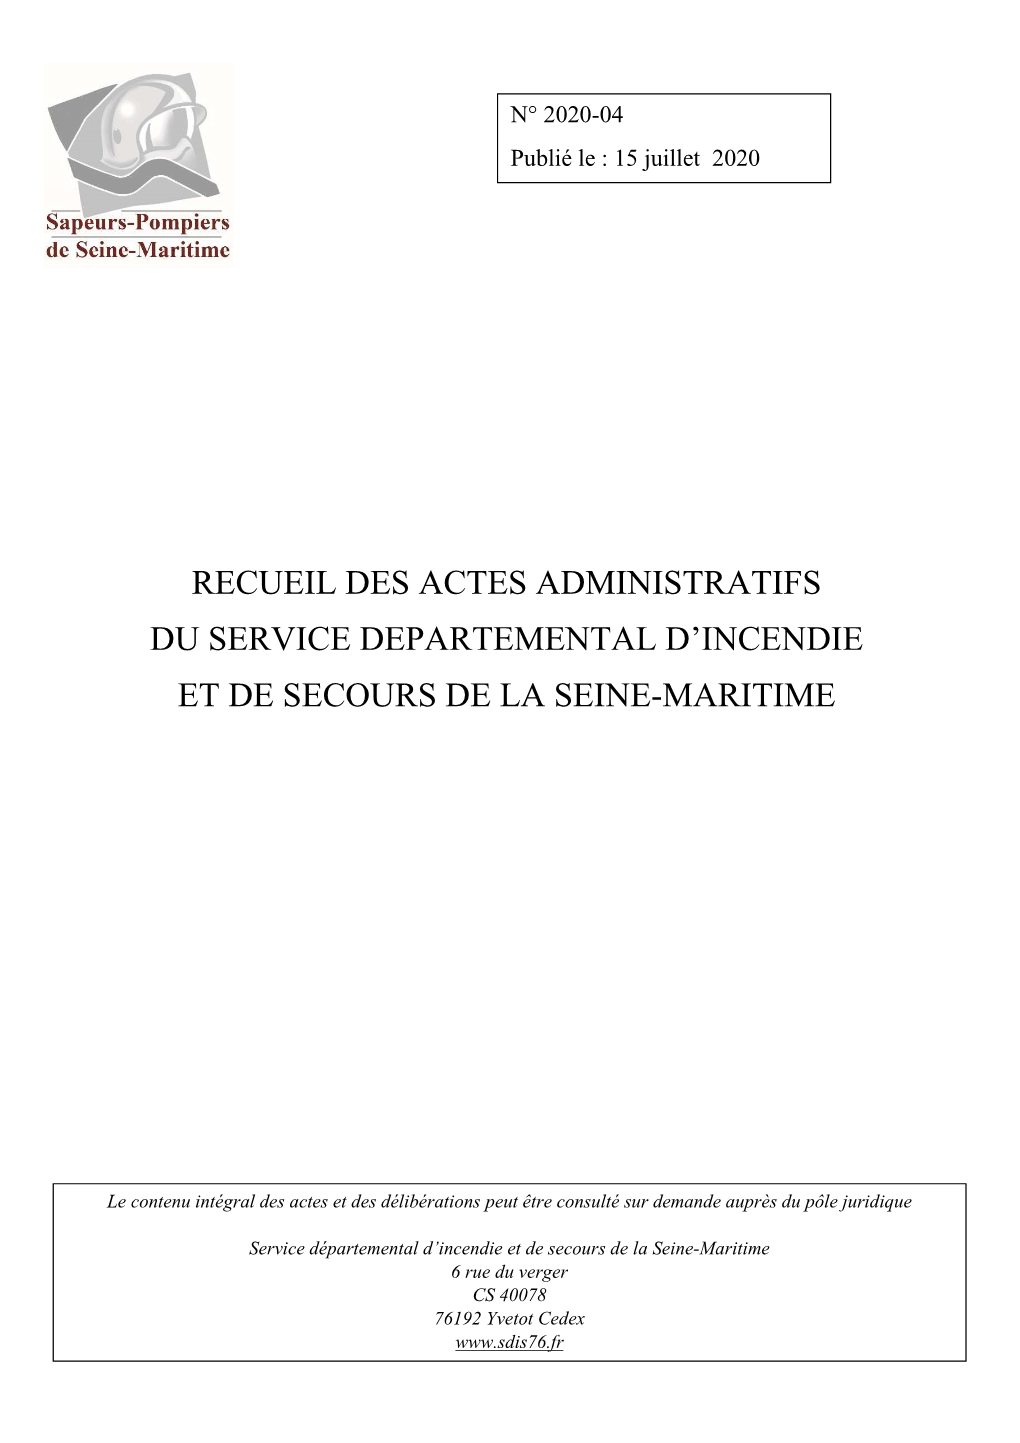 Recueil Des Actes Administratifs Du Service Departemental D’Incendie Et De Secours De La Seine-Maritime